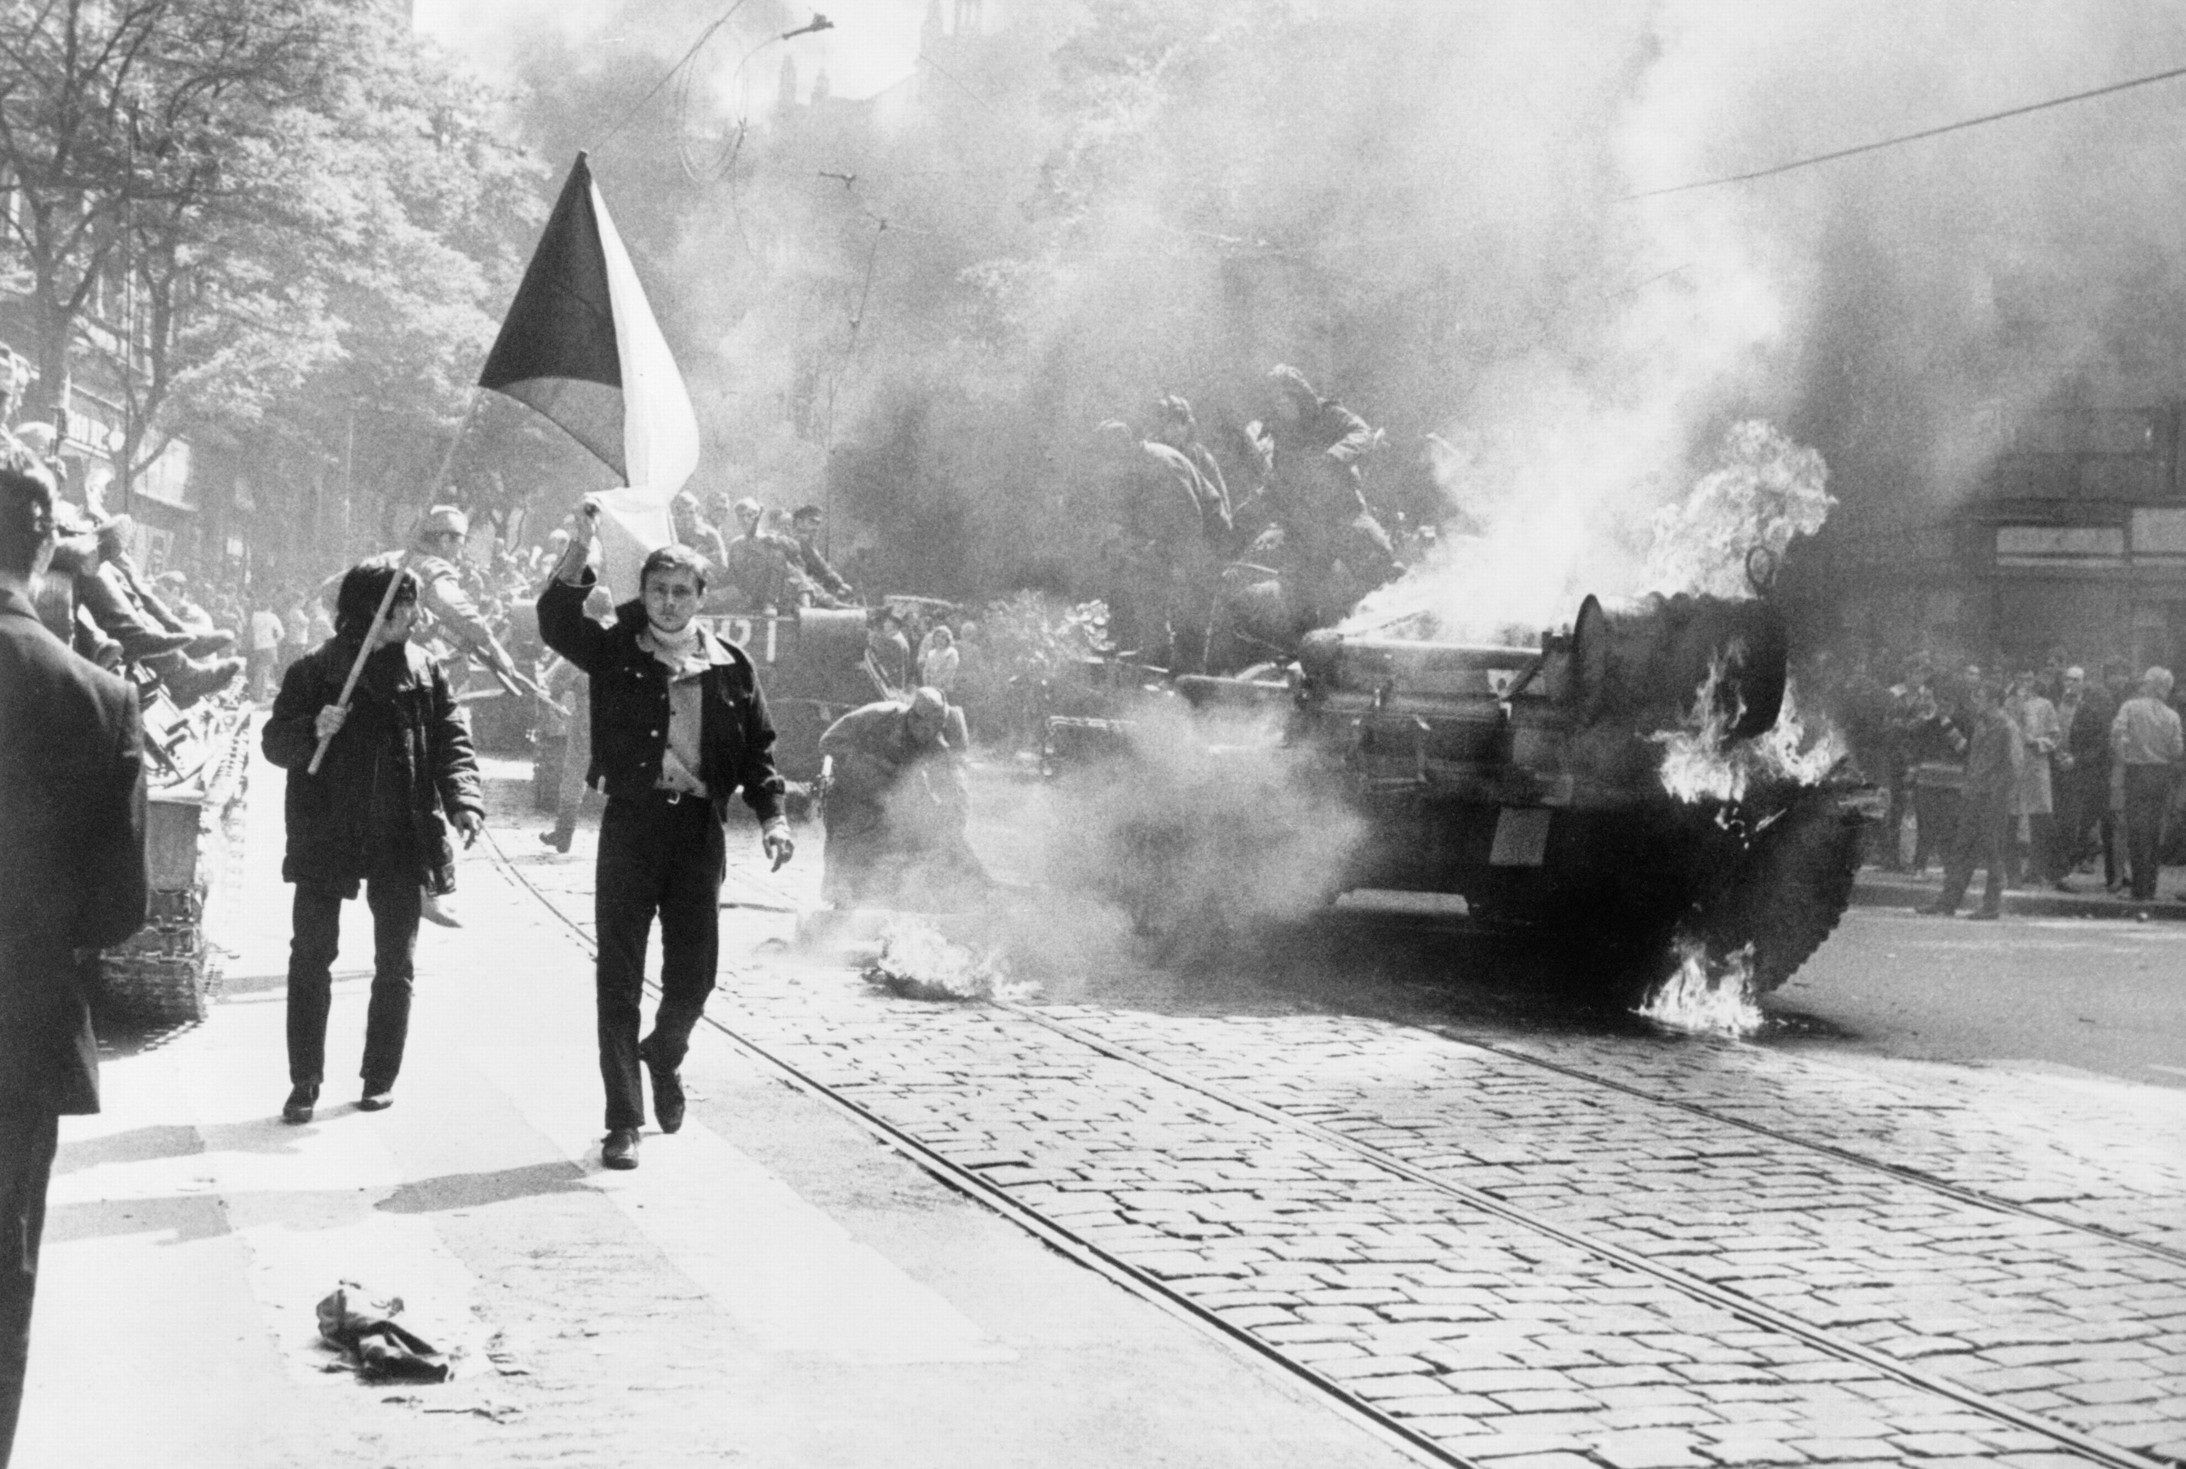 21. August 1968: Niederschlagung des Prager Frühlings. In der Nacht vom 20. zum 21. August marschiert eine halbe Million Soldaten der Sowjetunion, Polens, Ungarns und Bulgariens in der Tschechoslowakei ein. Es ist die grösste Militäroperation in Europa seit dem Zweiten Weltkrieg. Nicolae Ceaușescus Rumänien sowie Albanien und die DDR beteiligen sich nicht an der Invasion. 98 Tschechen und Slowaken sterben, ebenso 50 Soldaten der Invasionstruppen. Drei Tage nach dem Einmarsch wurde das „Moskauer Protokoll“ …